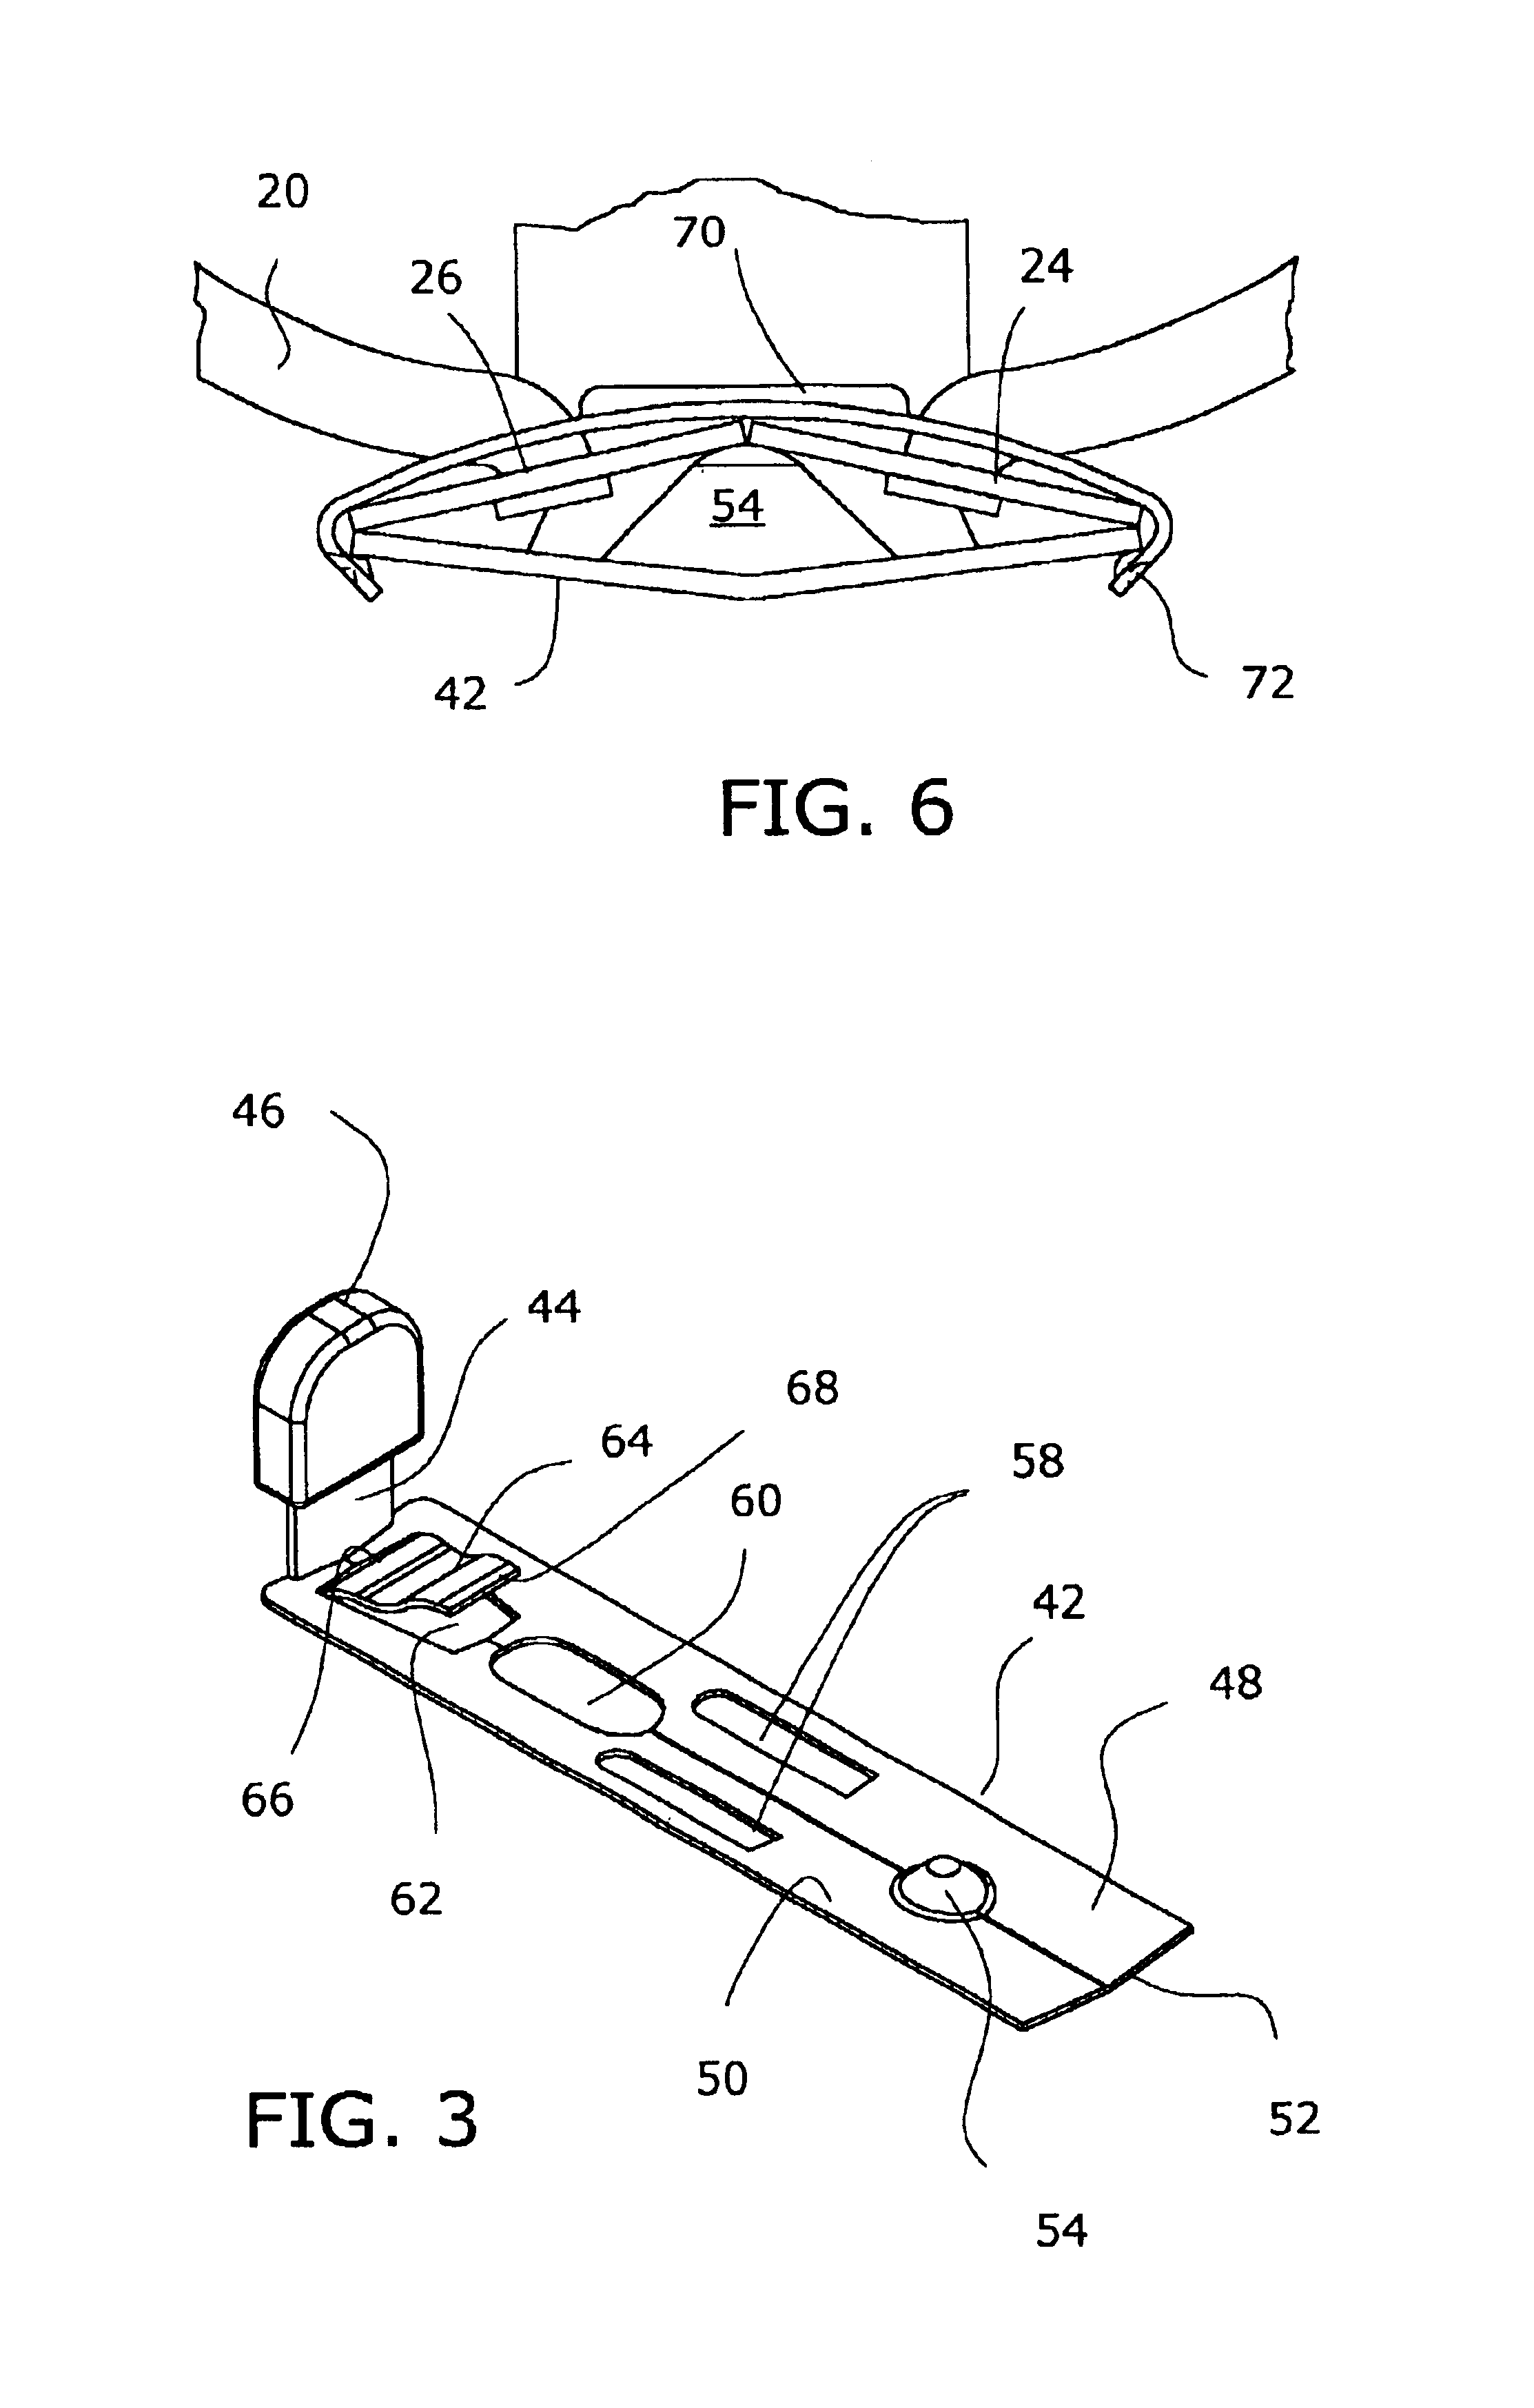 Safety ring binder having sliding actuators